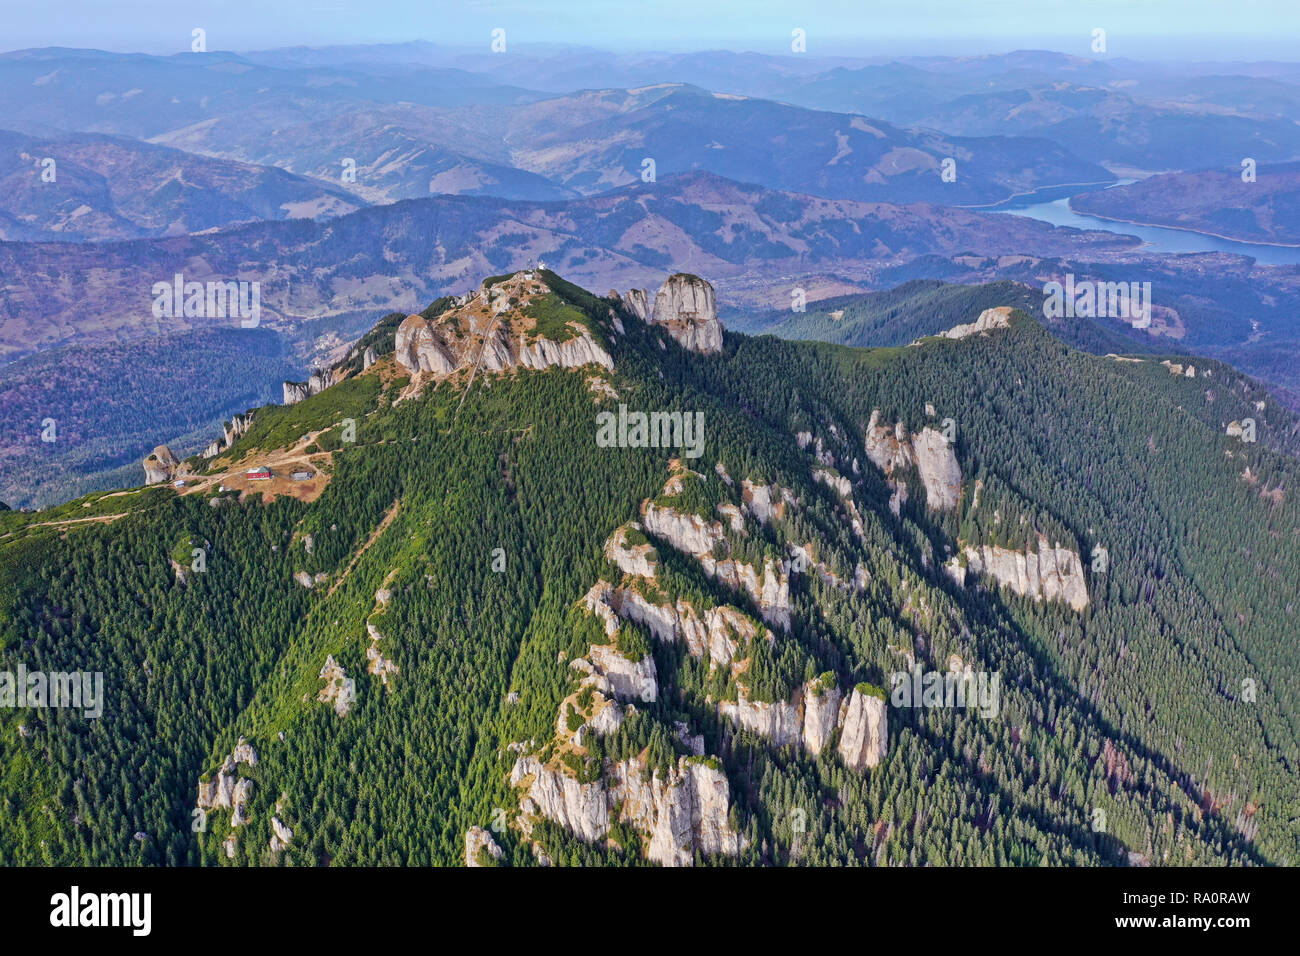 Les rochers et les paysages d'été de la forêt, vue aérienne de la montagne d'été Banque D'Images